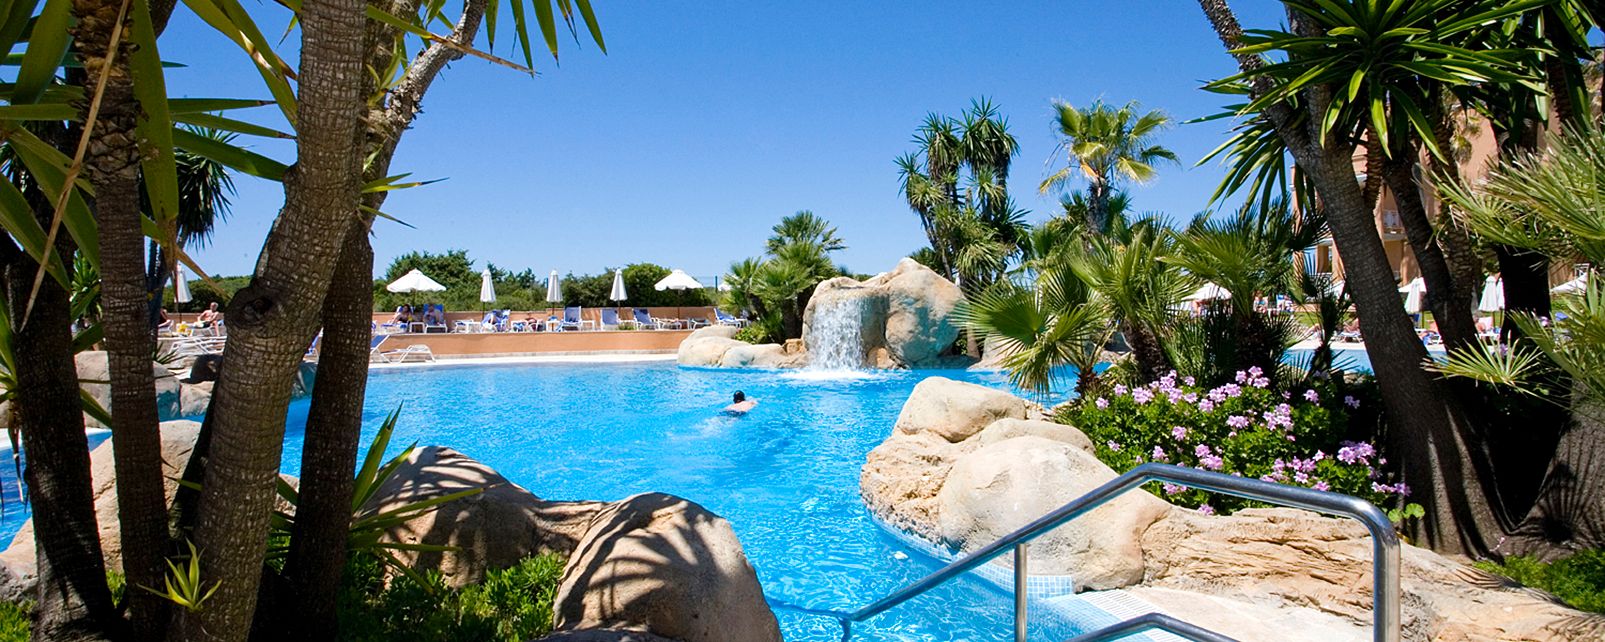 Hotel Hipotels Playa Barrosa